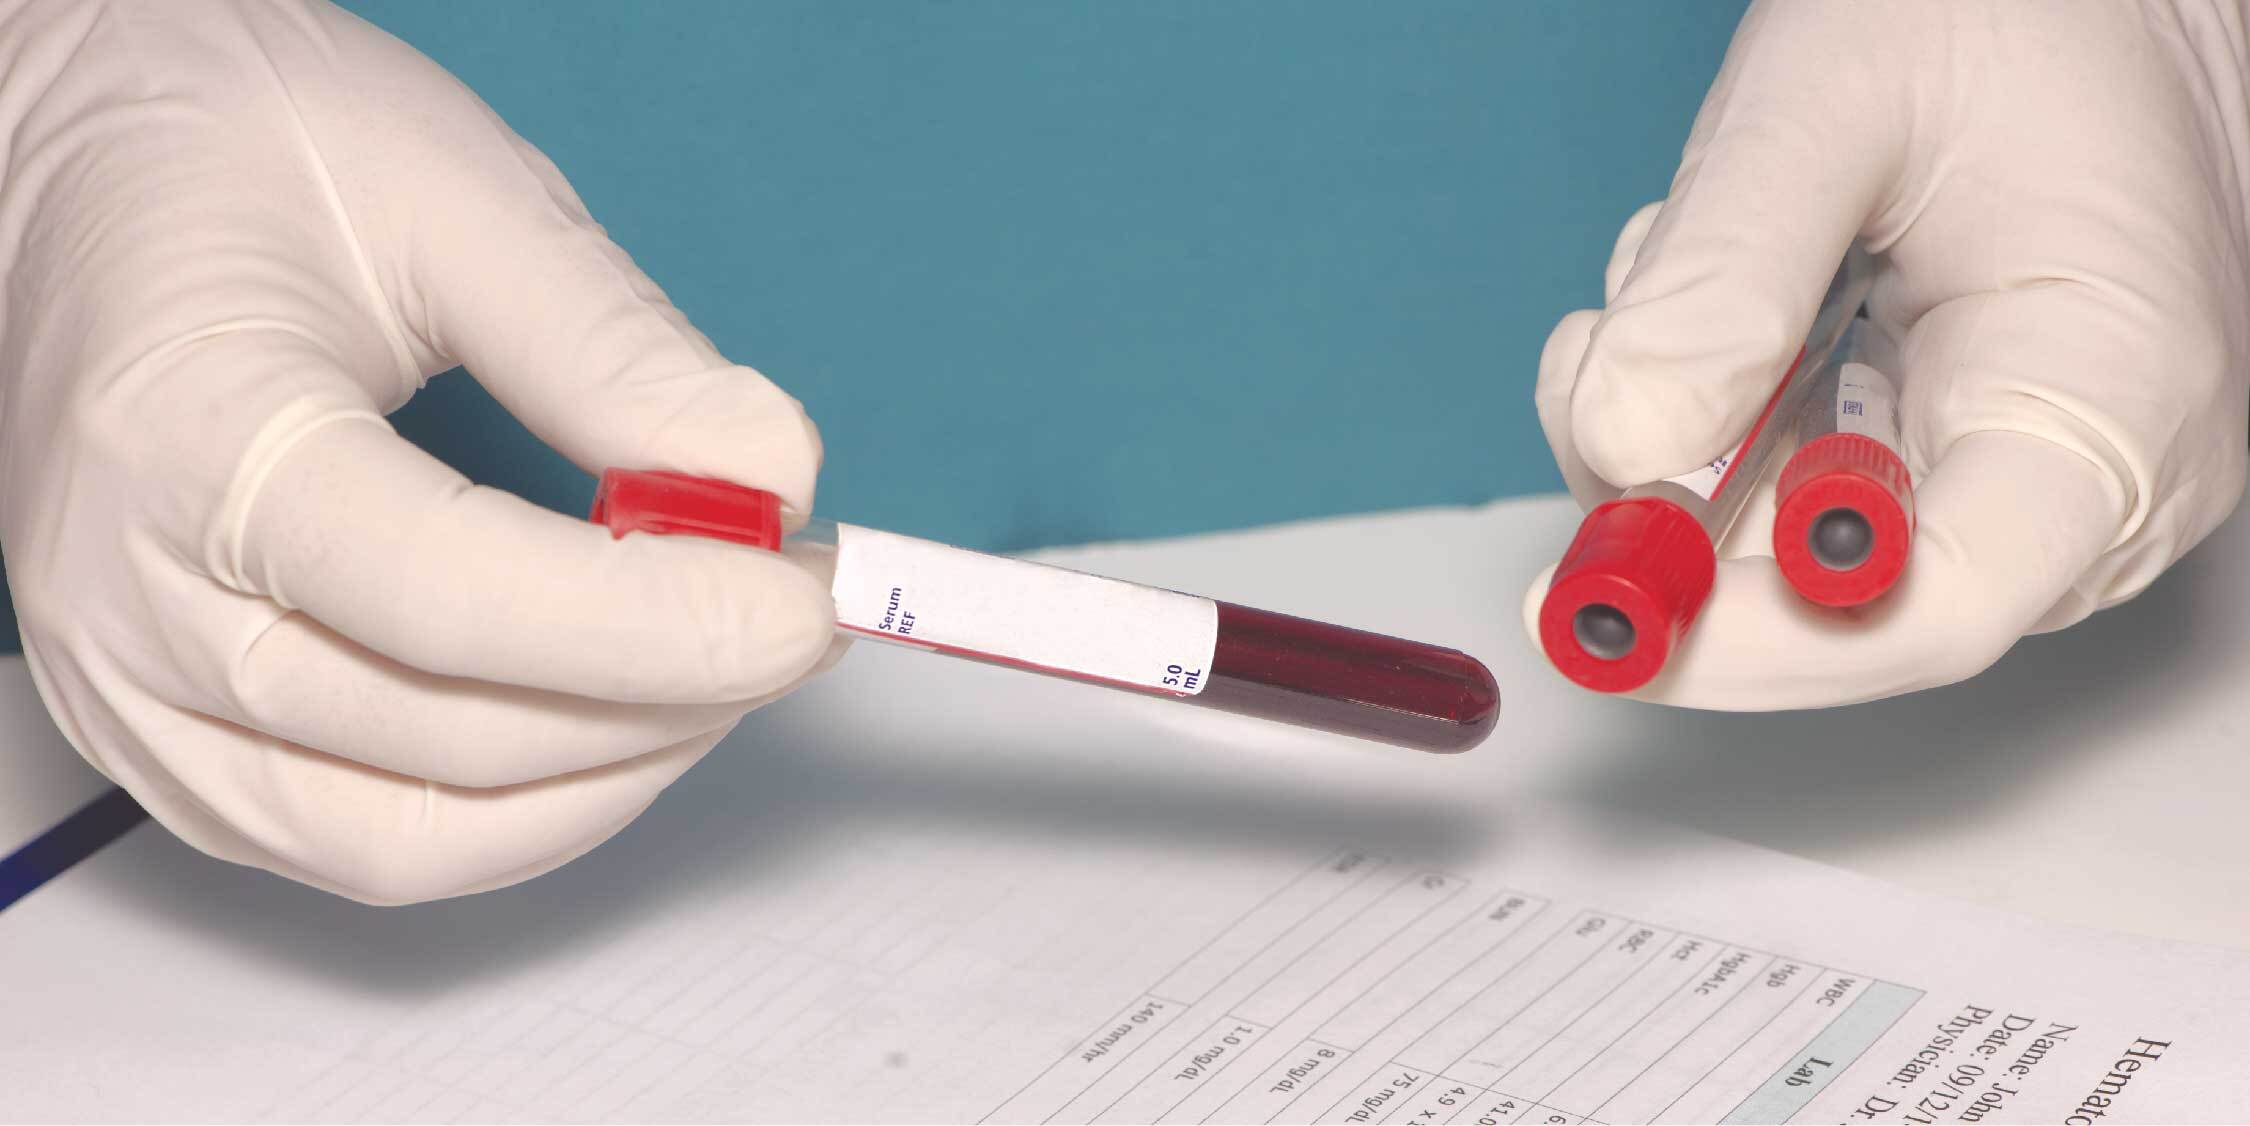 Кровь больного вич. Тестирование крови. Взятие крови на ВИЧ гепатиты. Исследование крови на ВИЧ картинками.